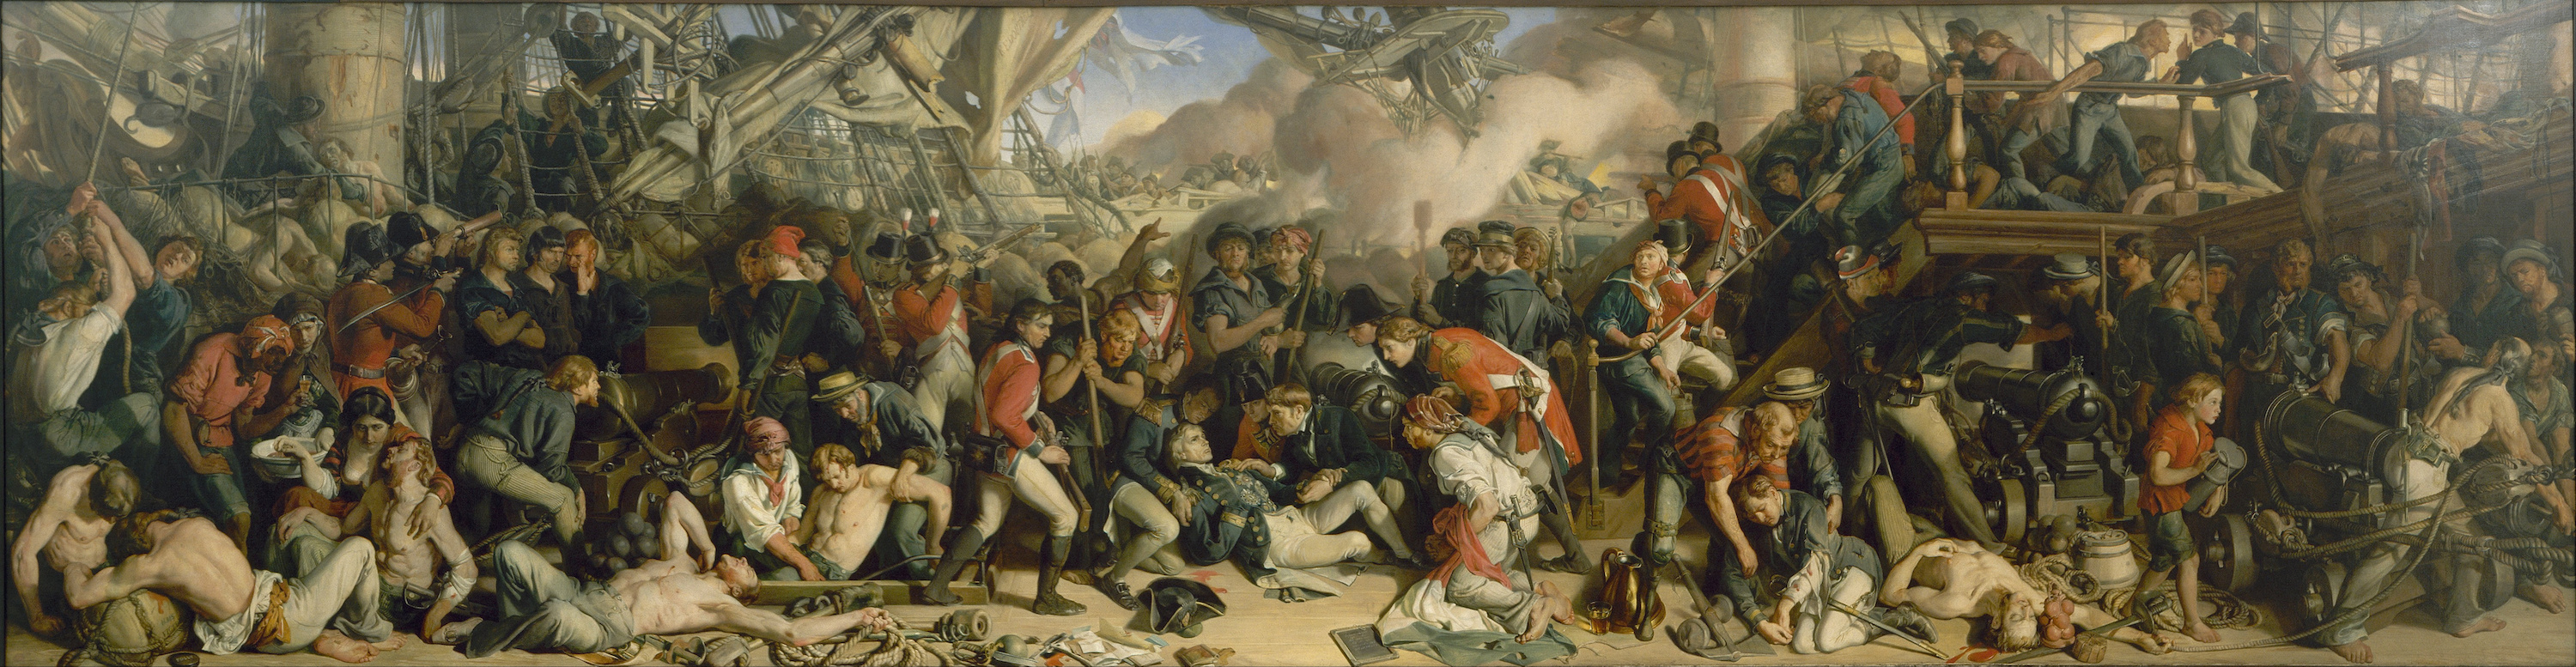 A Morte de Nelson by Daniel Maclise - 1859–1861 